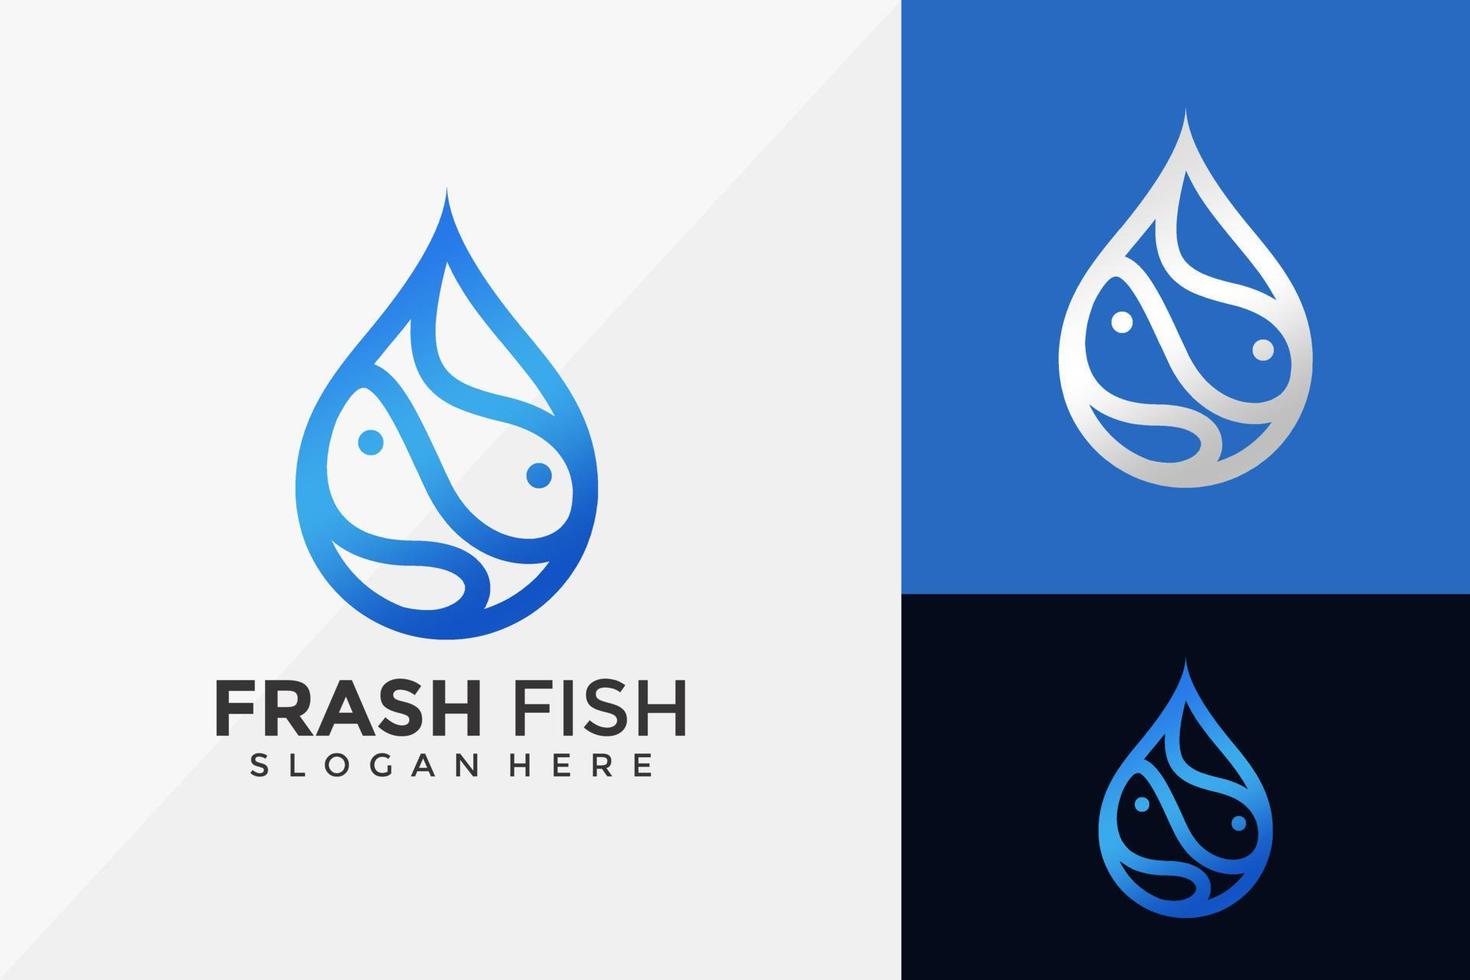 onda de queda, design de logotipo de peixe fresco drop, modelo de ilustração vetorial de designs modernos de logotipo vetor